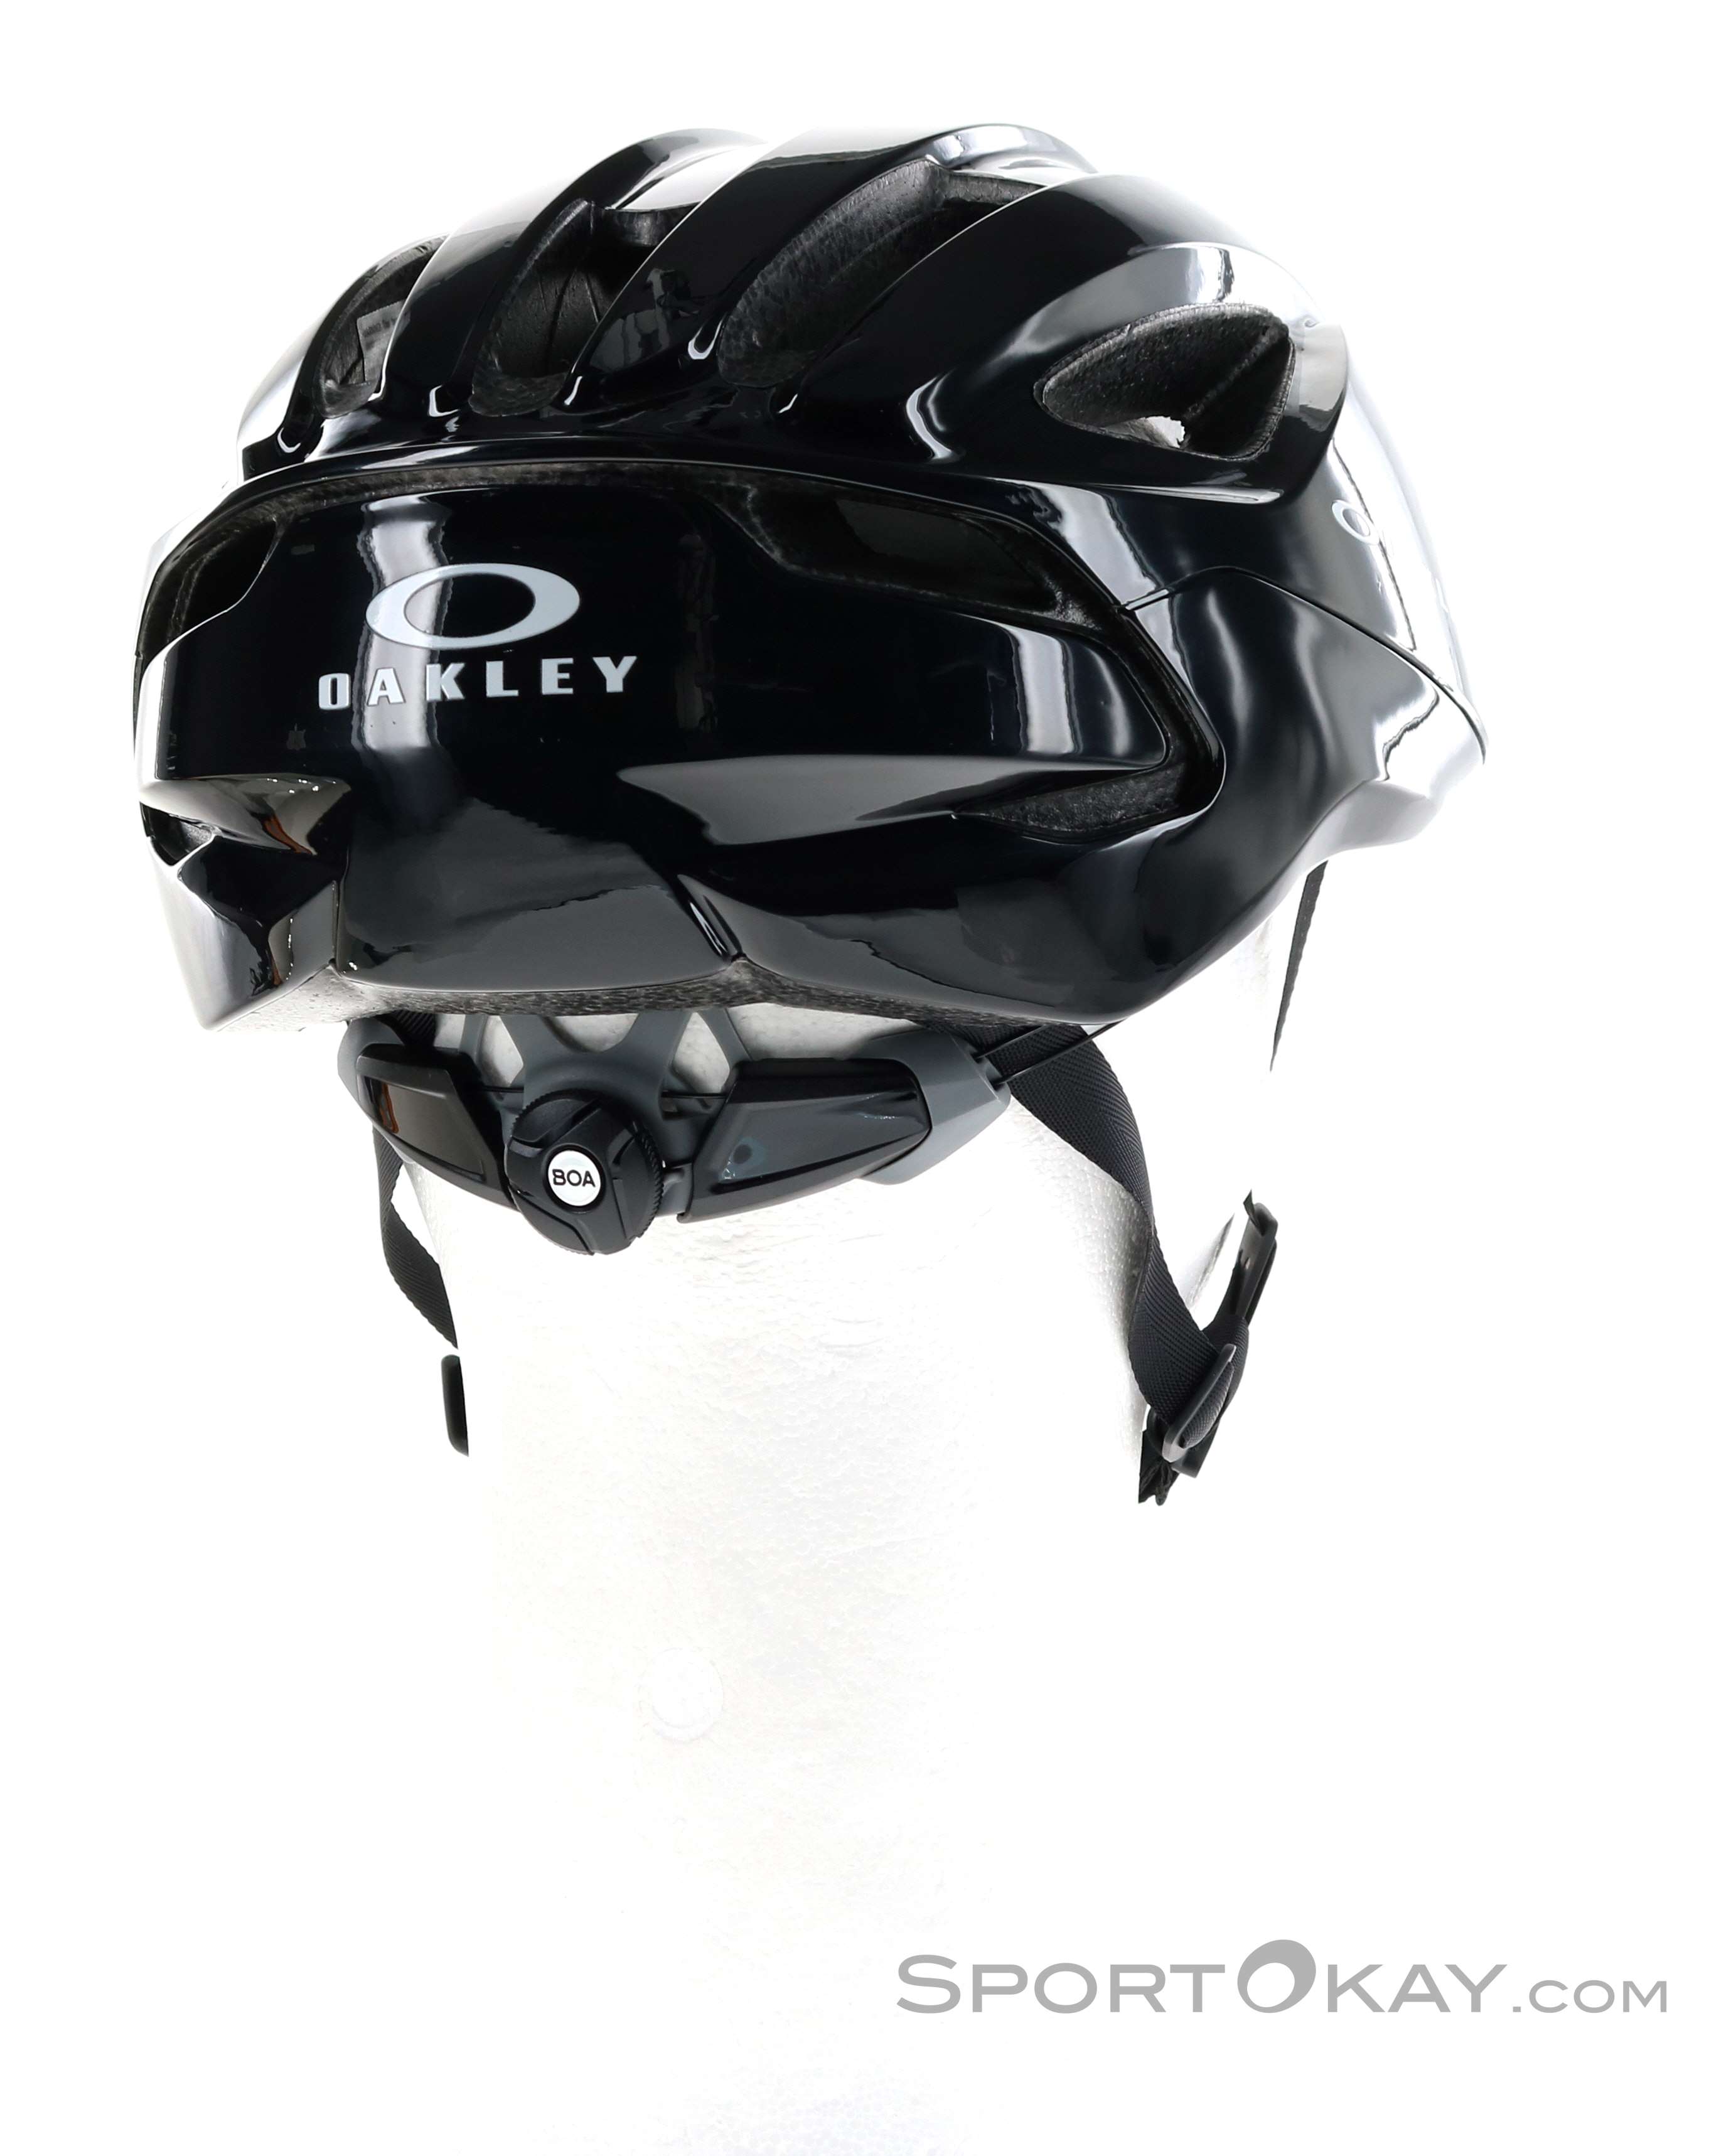 Oakley Aro 3 Lite Road Cycling Helmet - Road Bike - Helmets - Bike - All